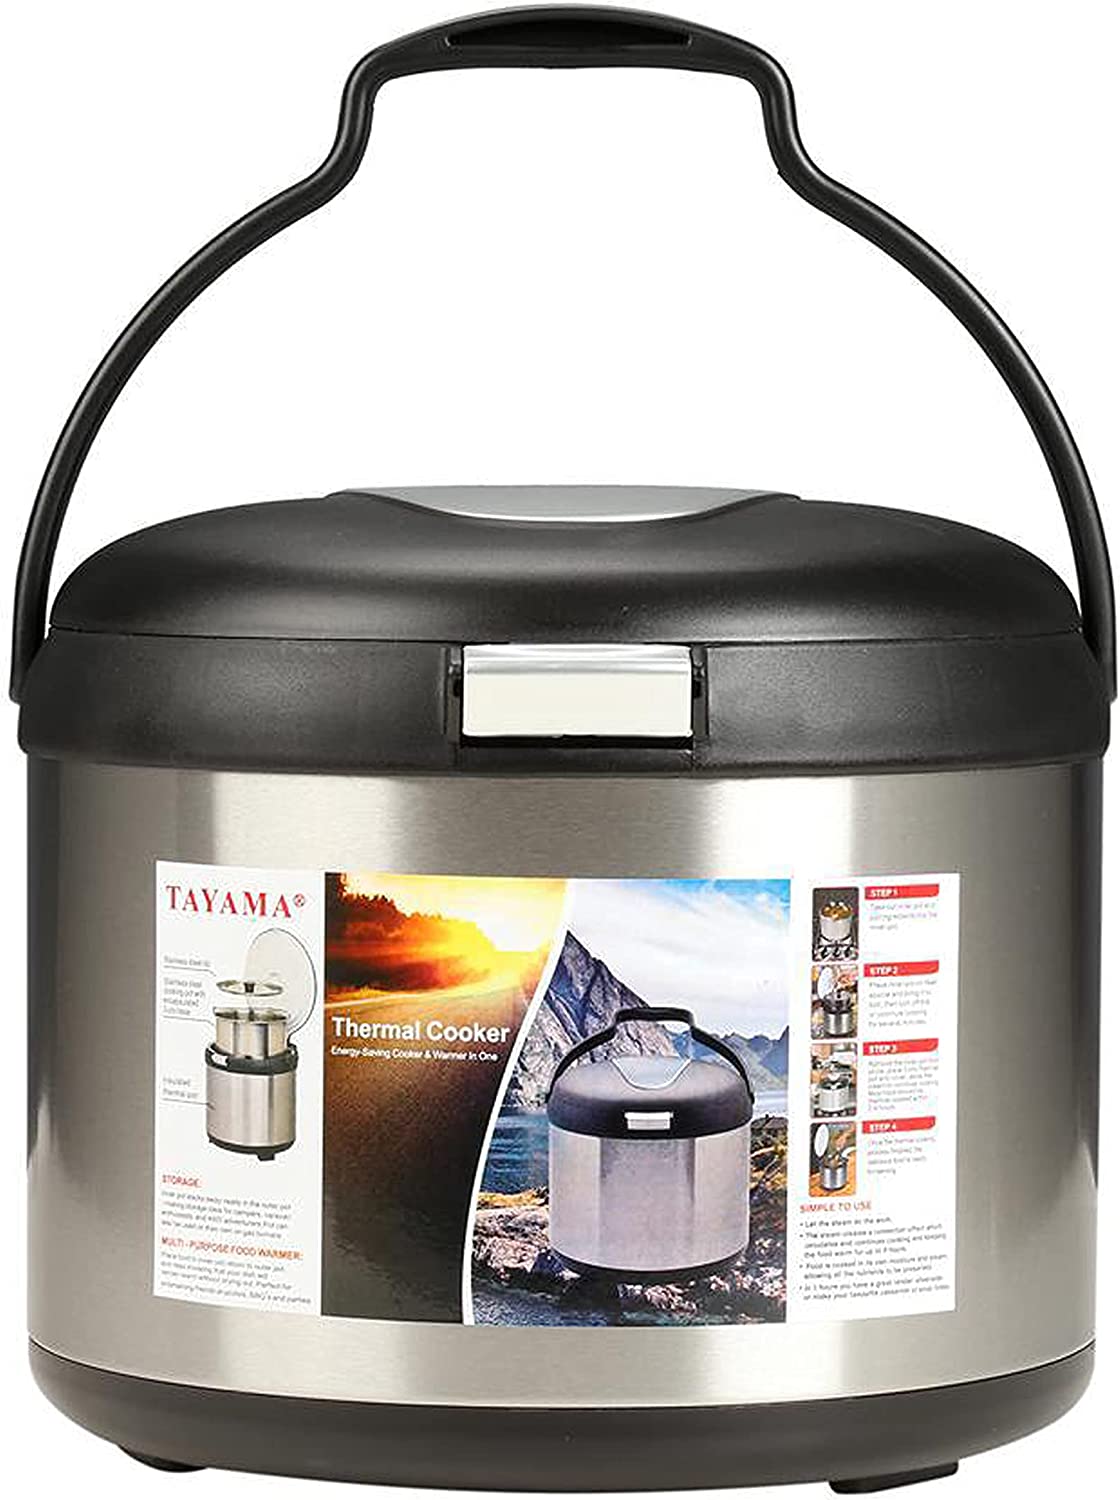 Tayama 5-Quart Thermal Cooker